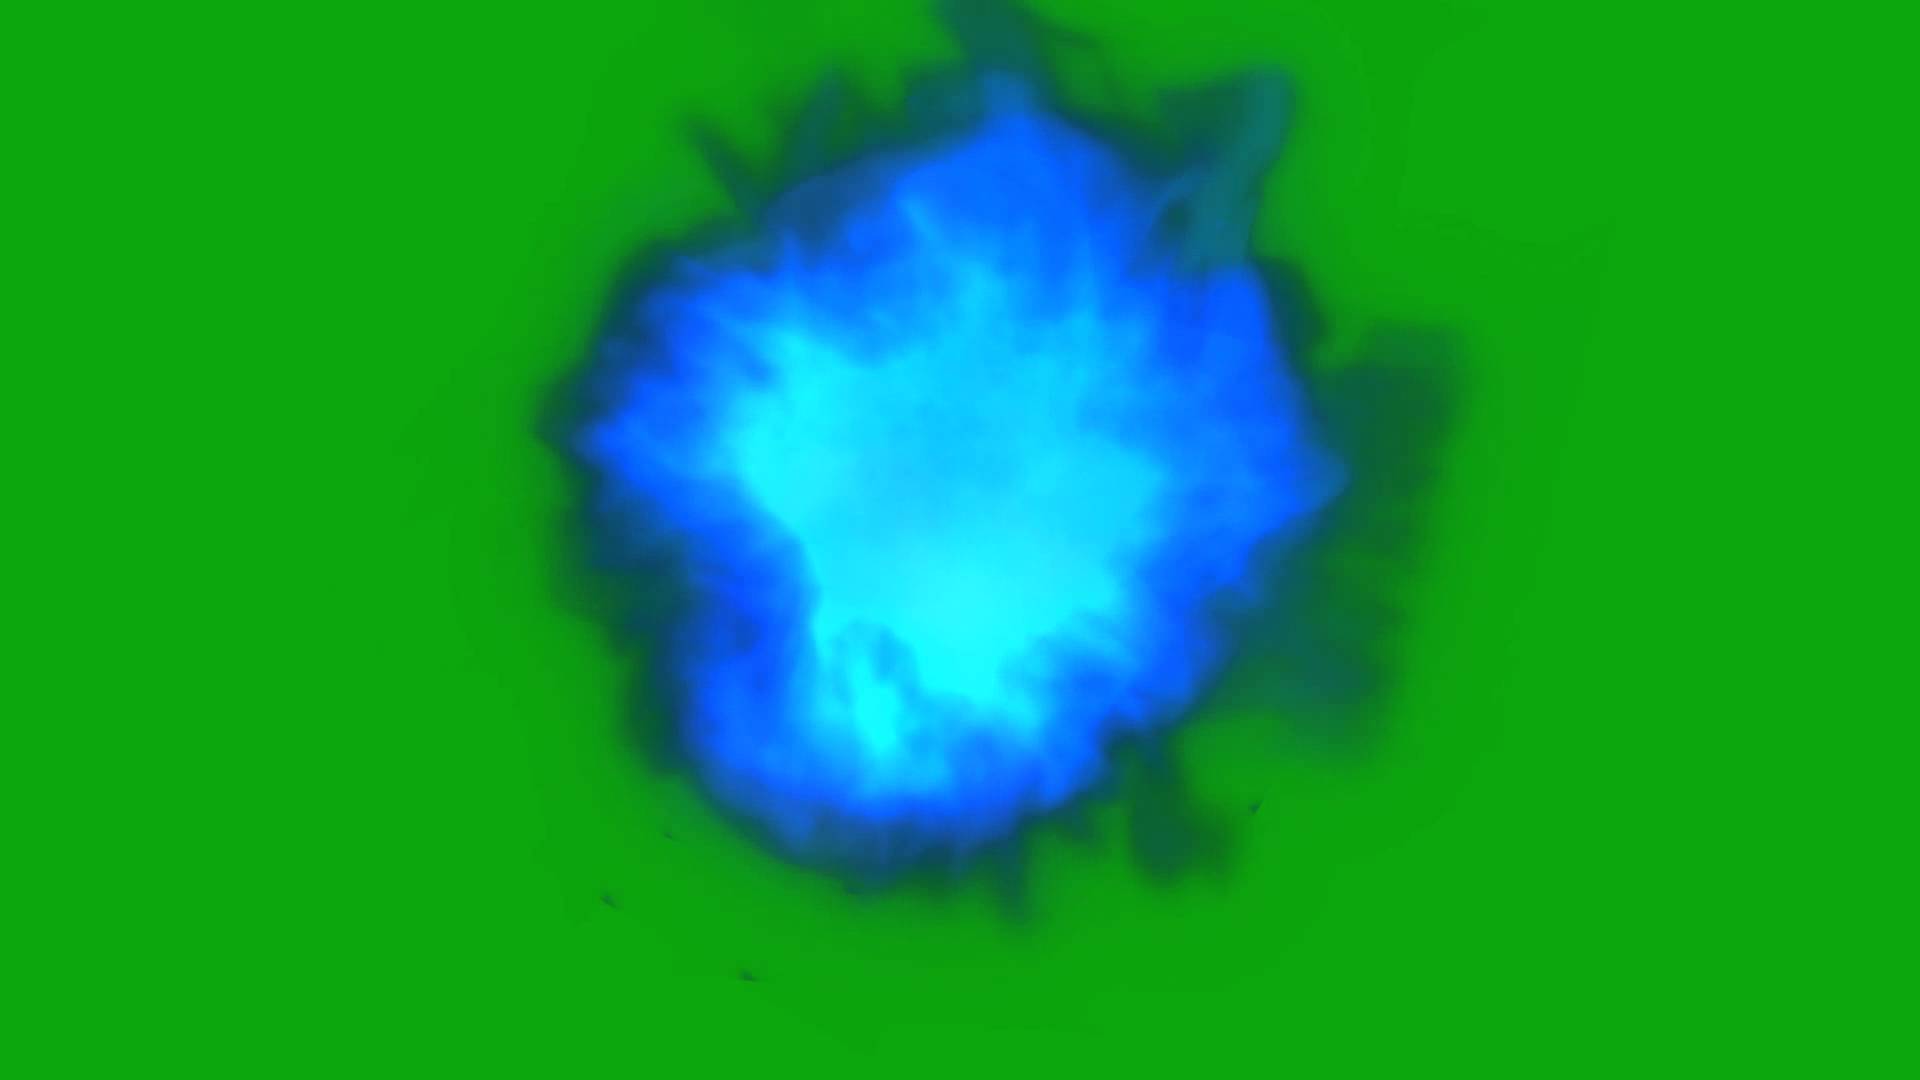 BLUE FIREBALL Greenscreen Effect - YouTube